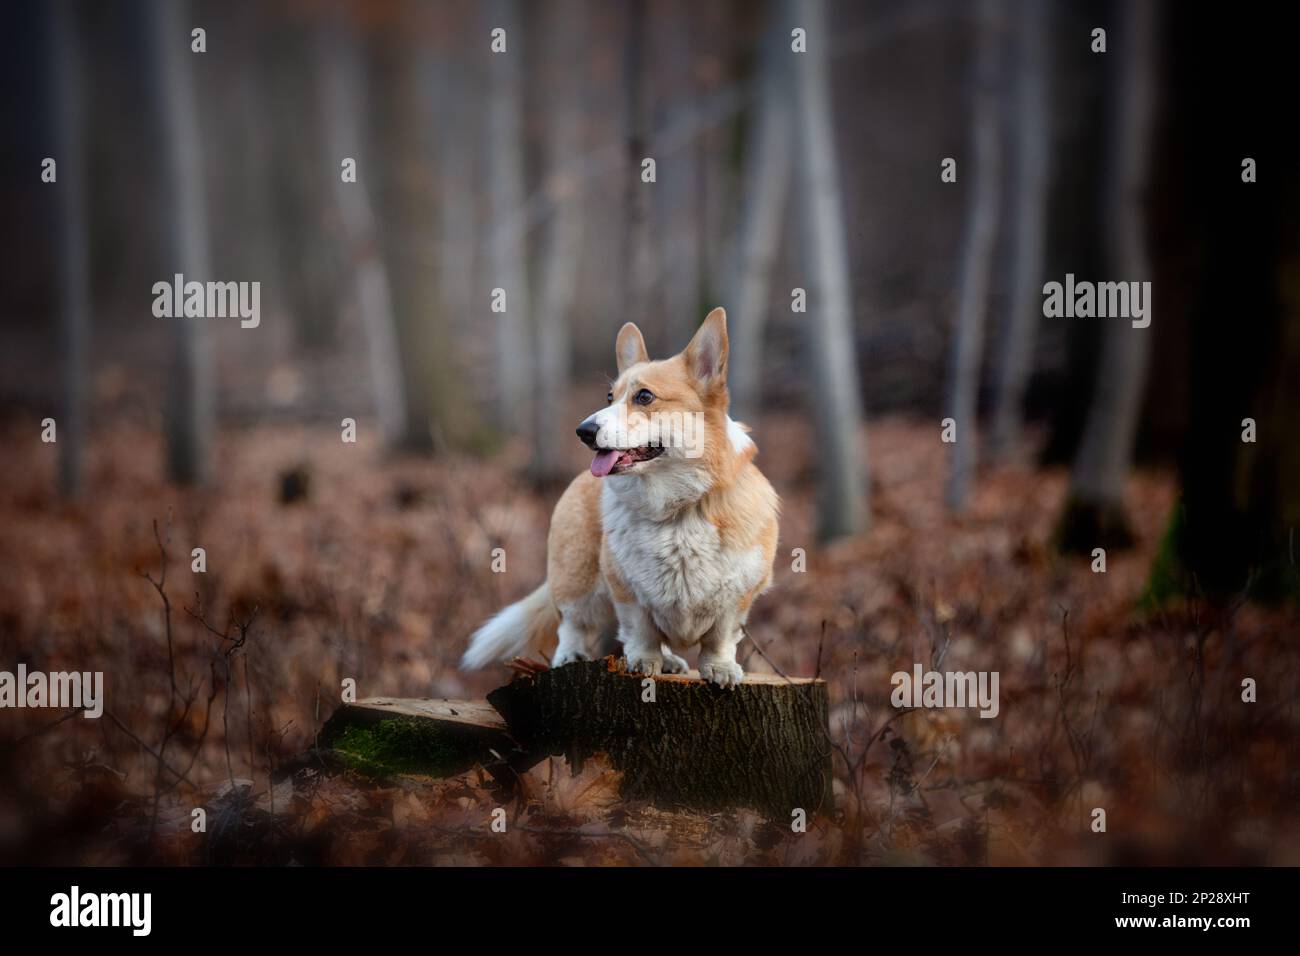 Un chien de Pembroke gallois Corgi se tient sur un picot au milieu de la forêt. Dans la forêt Banque D'Images